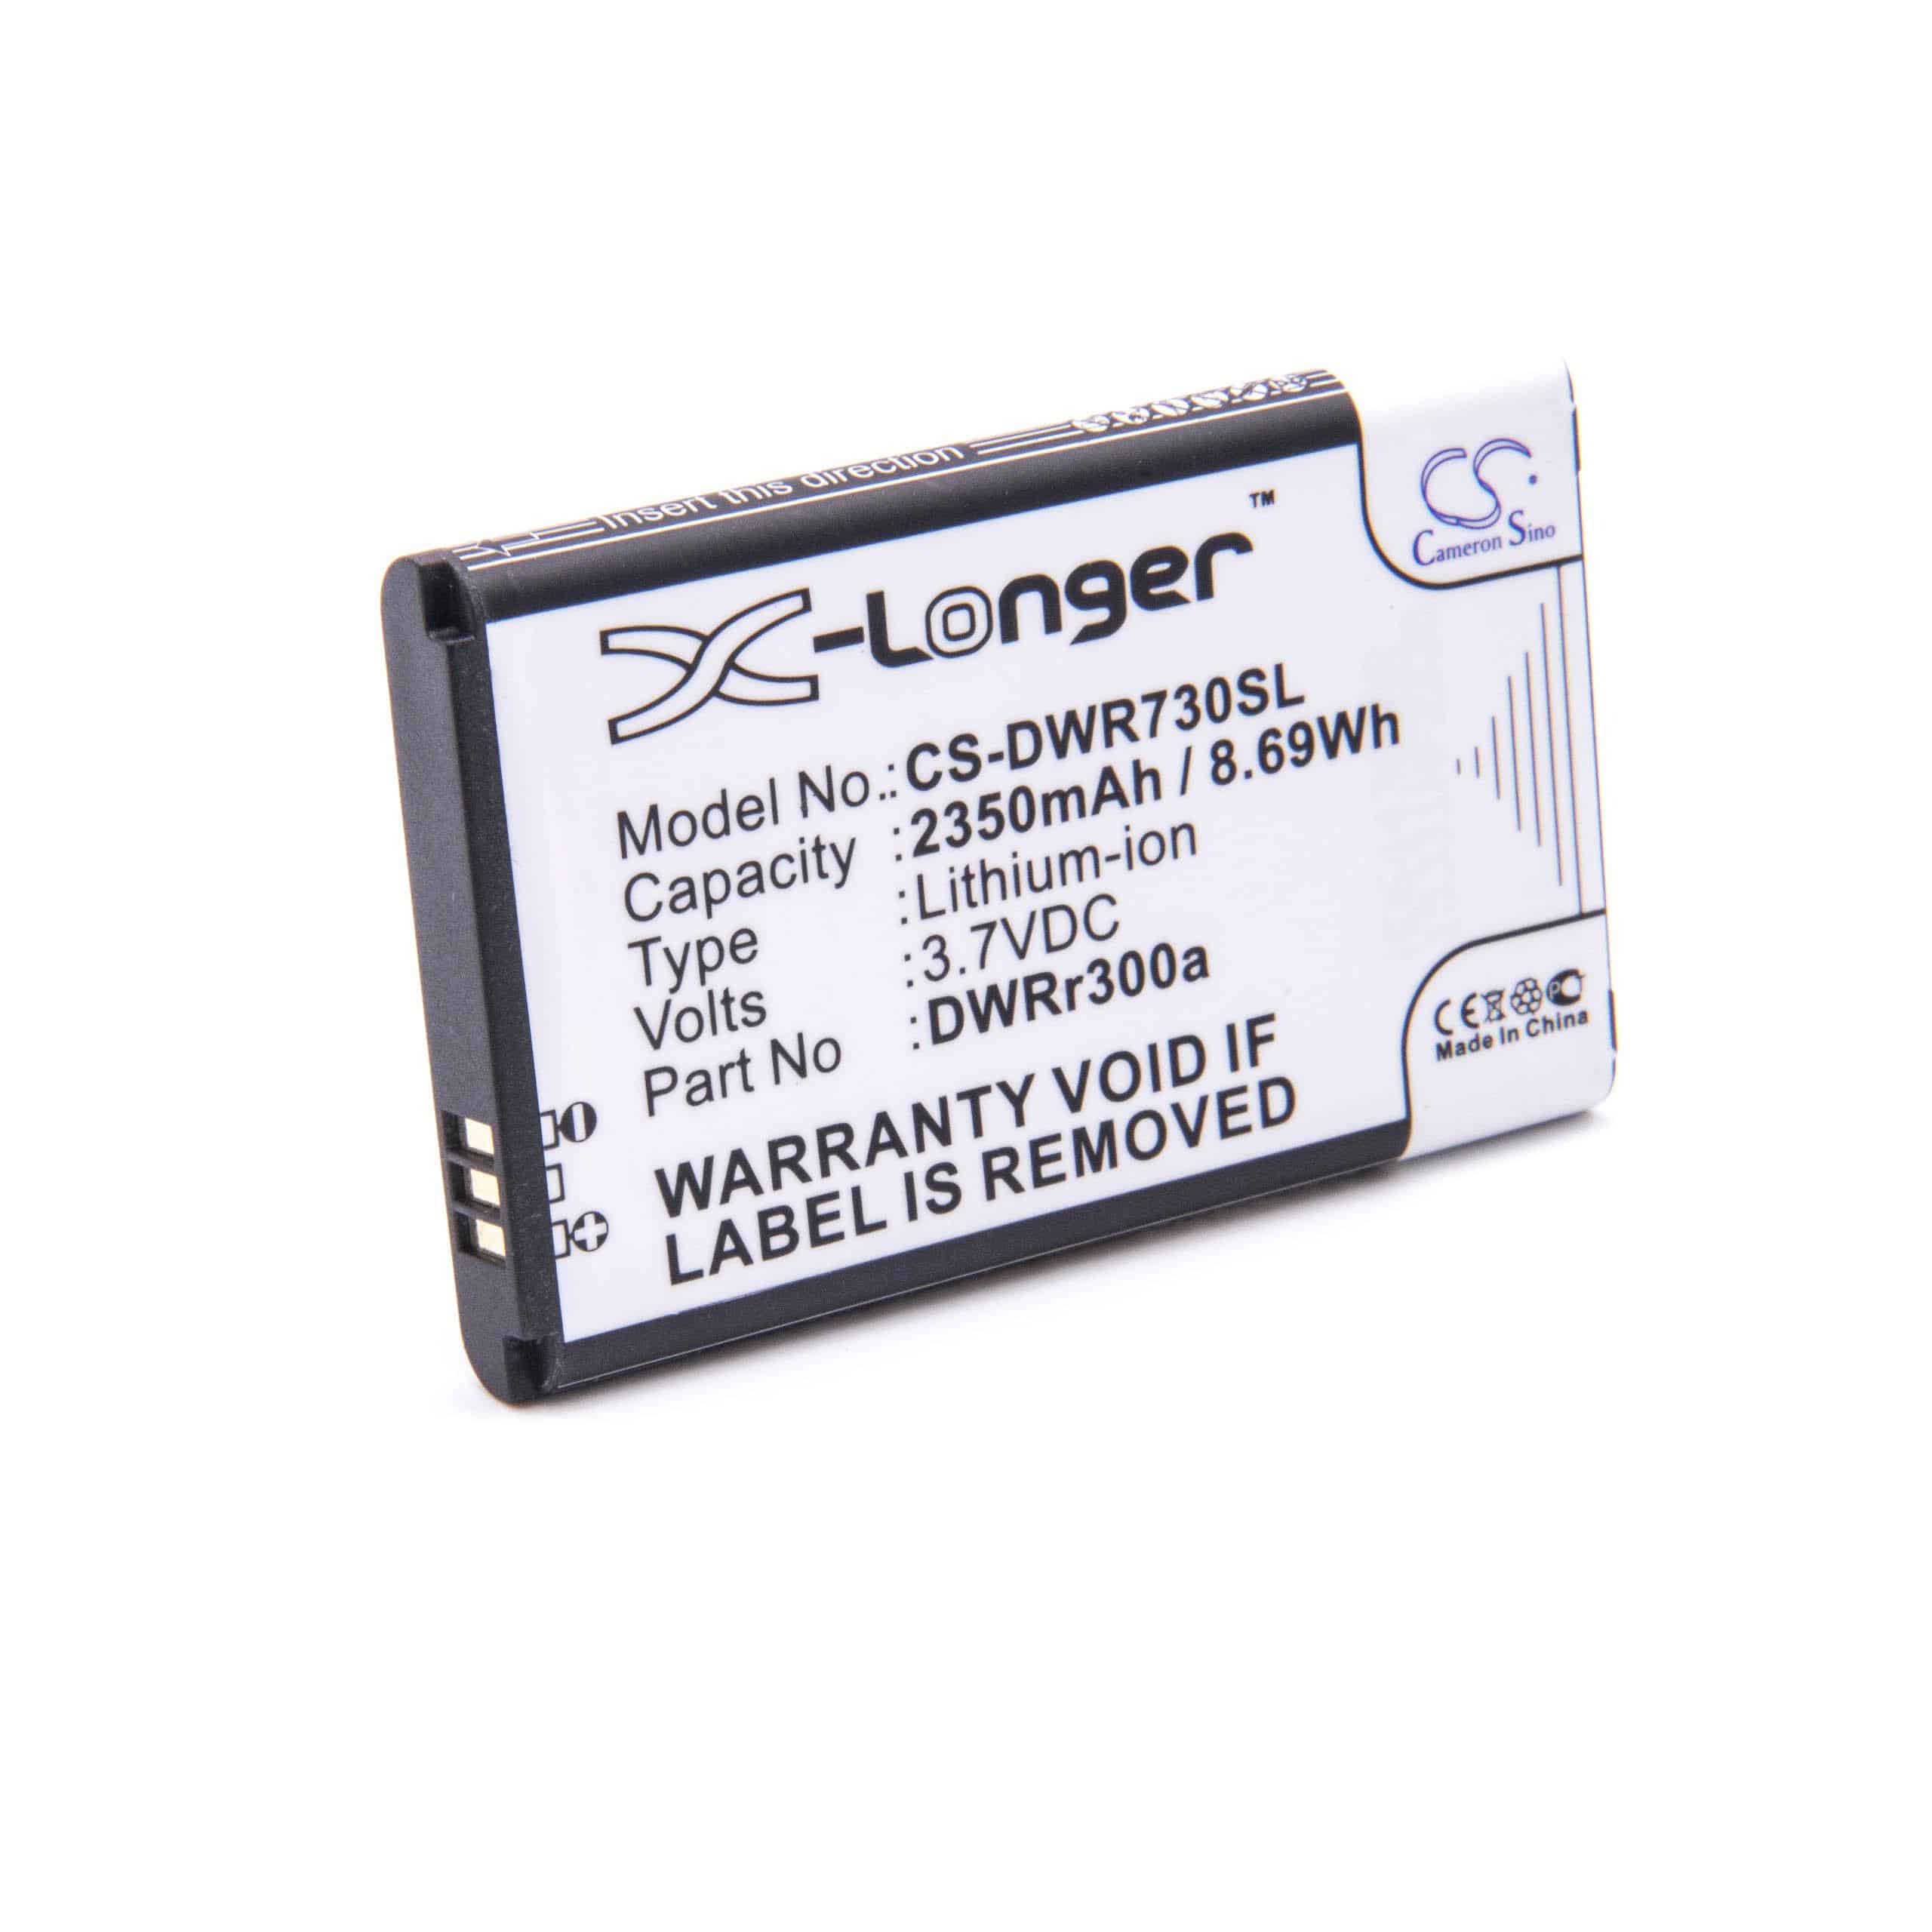 Batteria per hotspot modem router portatile sostituisce D-Link 6BT-R300A-291 D-Link - 2350mAh 3,7V Li-Ion